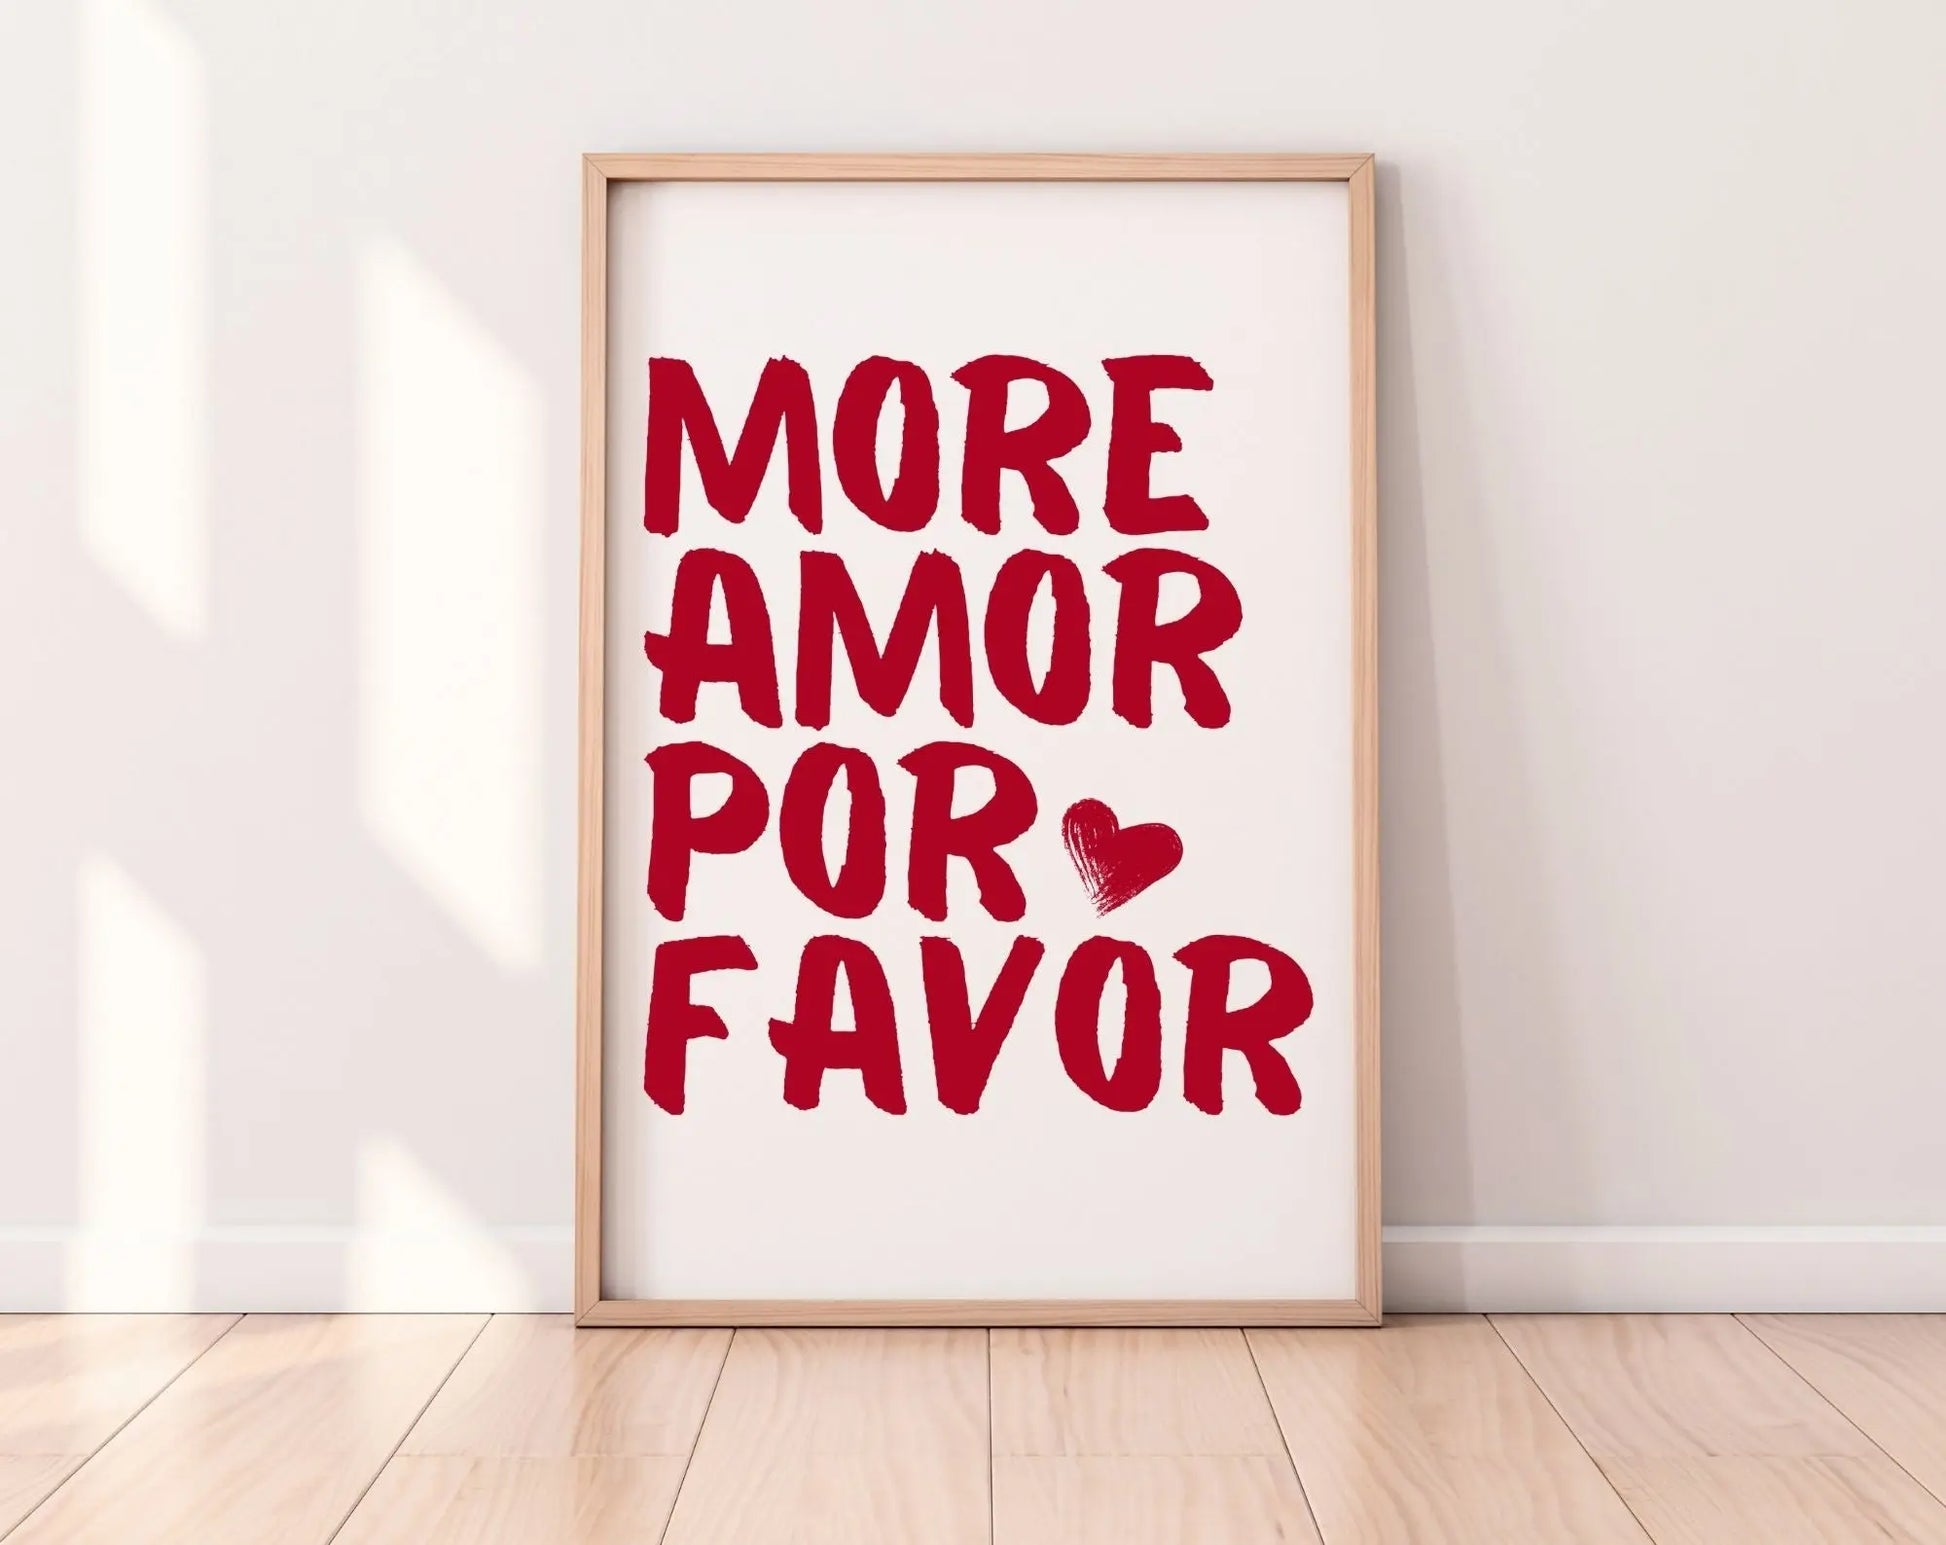 More amor por favor rouge - Affiche Saint-Valentin FLTMfrance